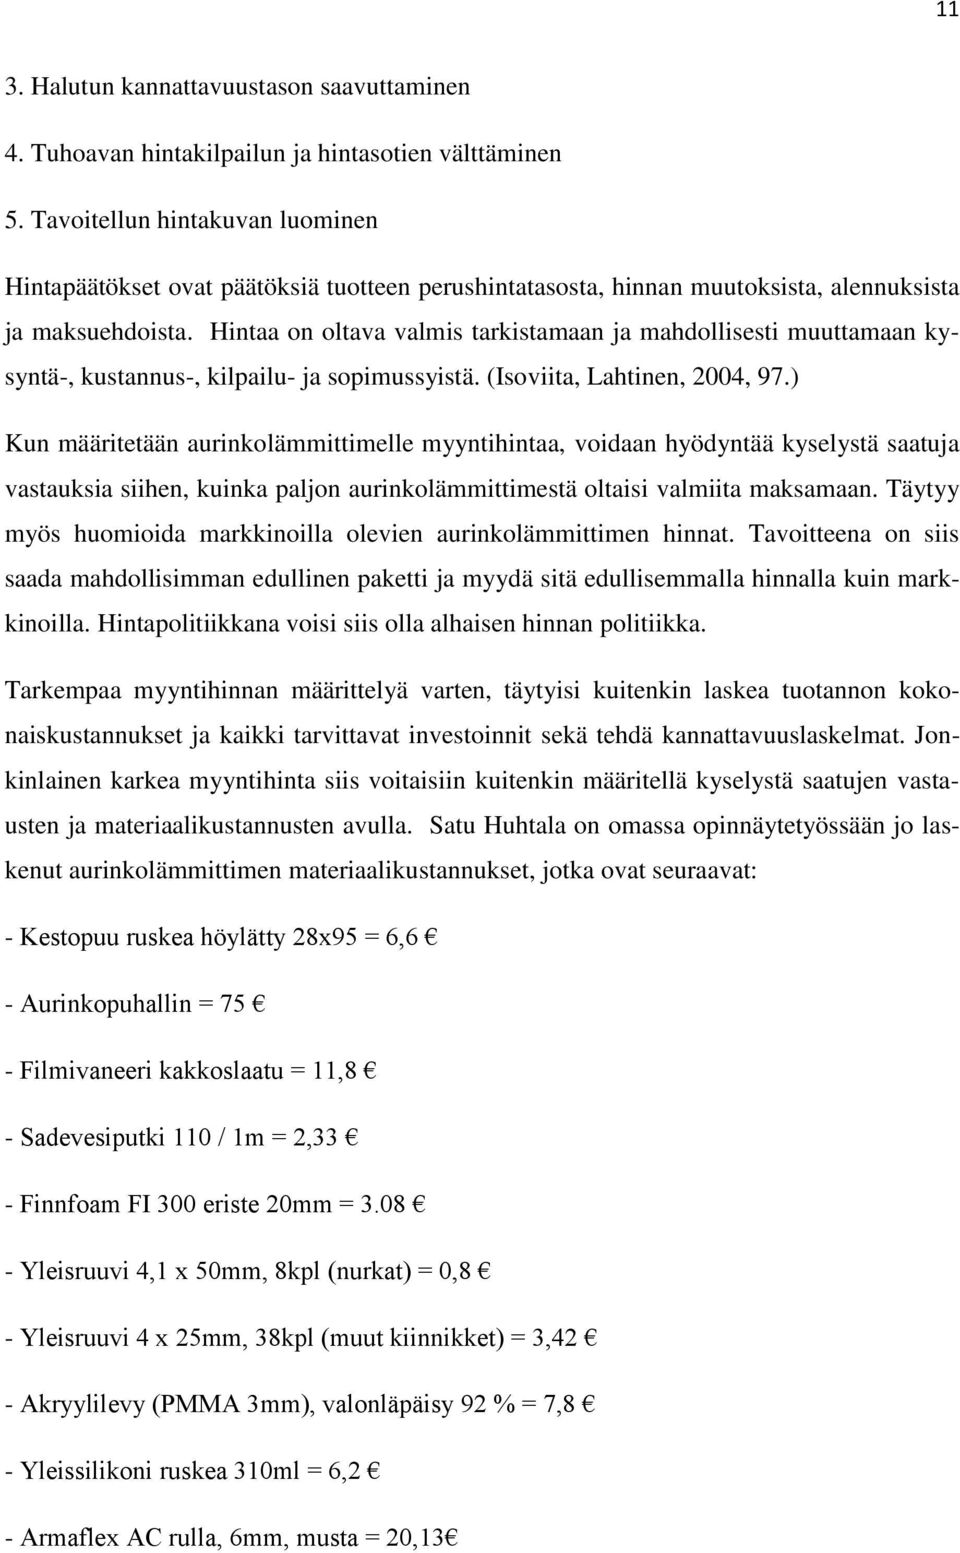 Hintaa on oltava valmis tarkistamaan ja mahdollisesti muuttamaan kysyntä-, kustannus-, kilpailu- ja sopimussyistä. (Isoviita, Lahtinen, 2004, 97.